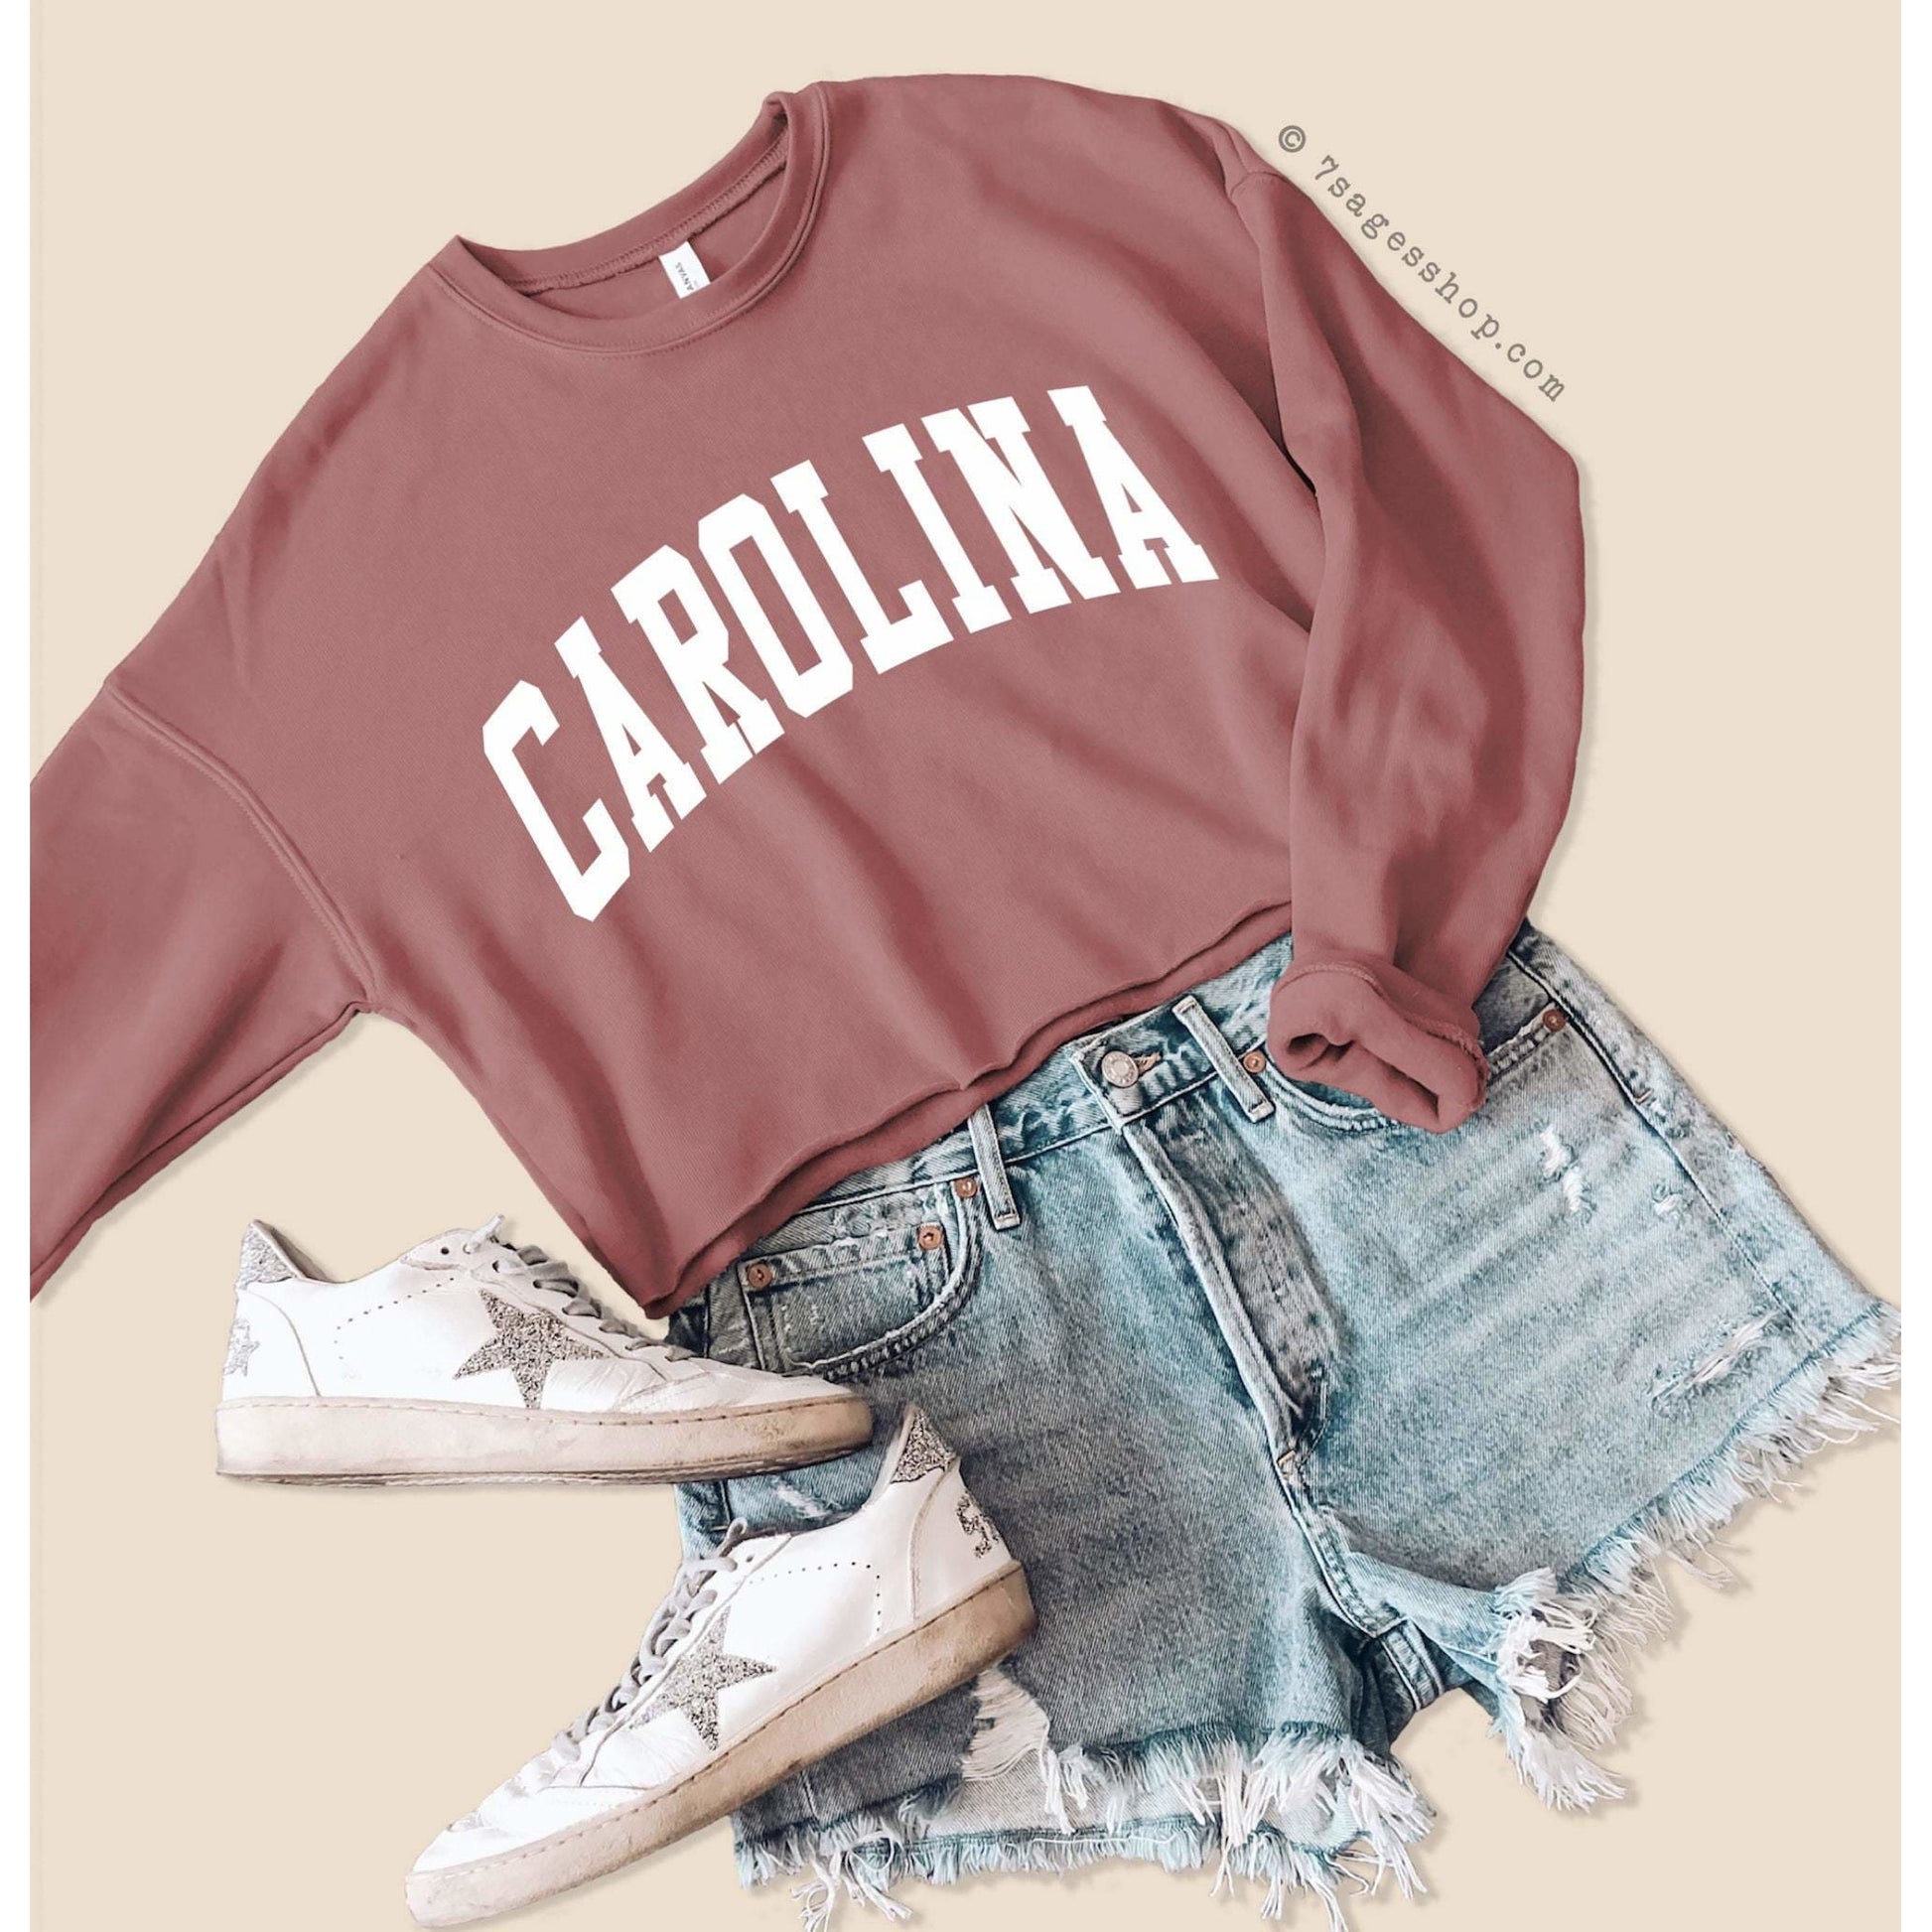 Carolina Cropped Sweatshirt - North Carolina Sweatshirt - North Carolina Shirts - North Carolina University Crop Top - Fleece Sweatshirt